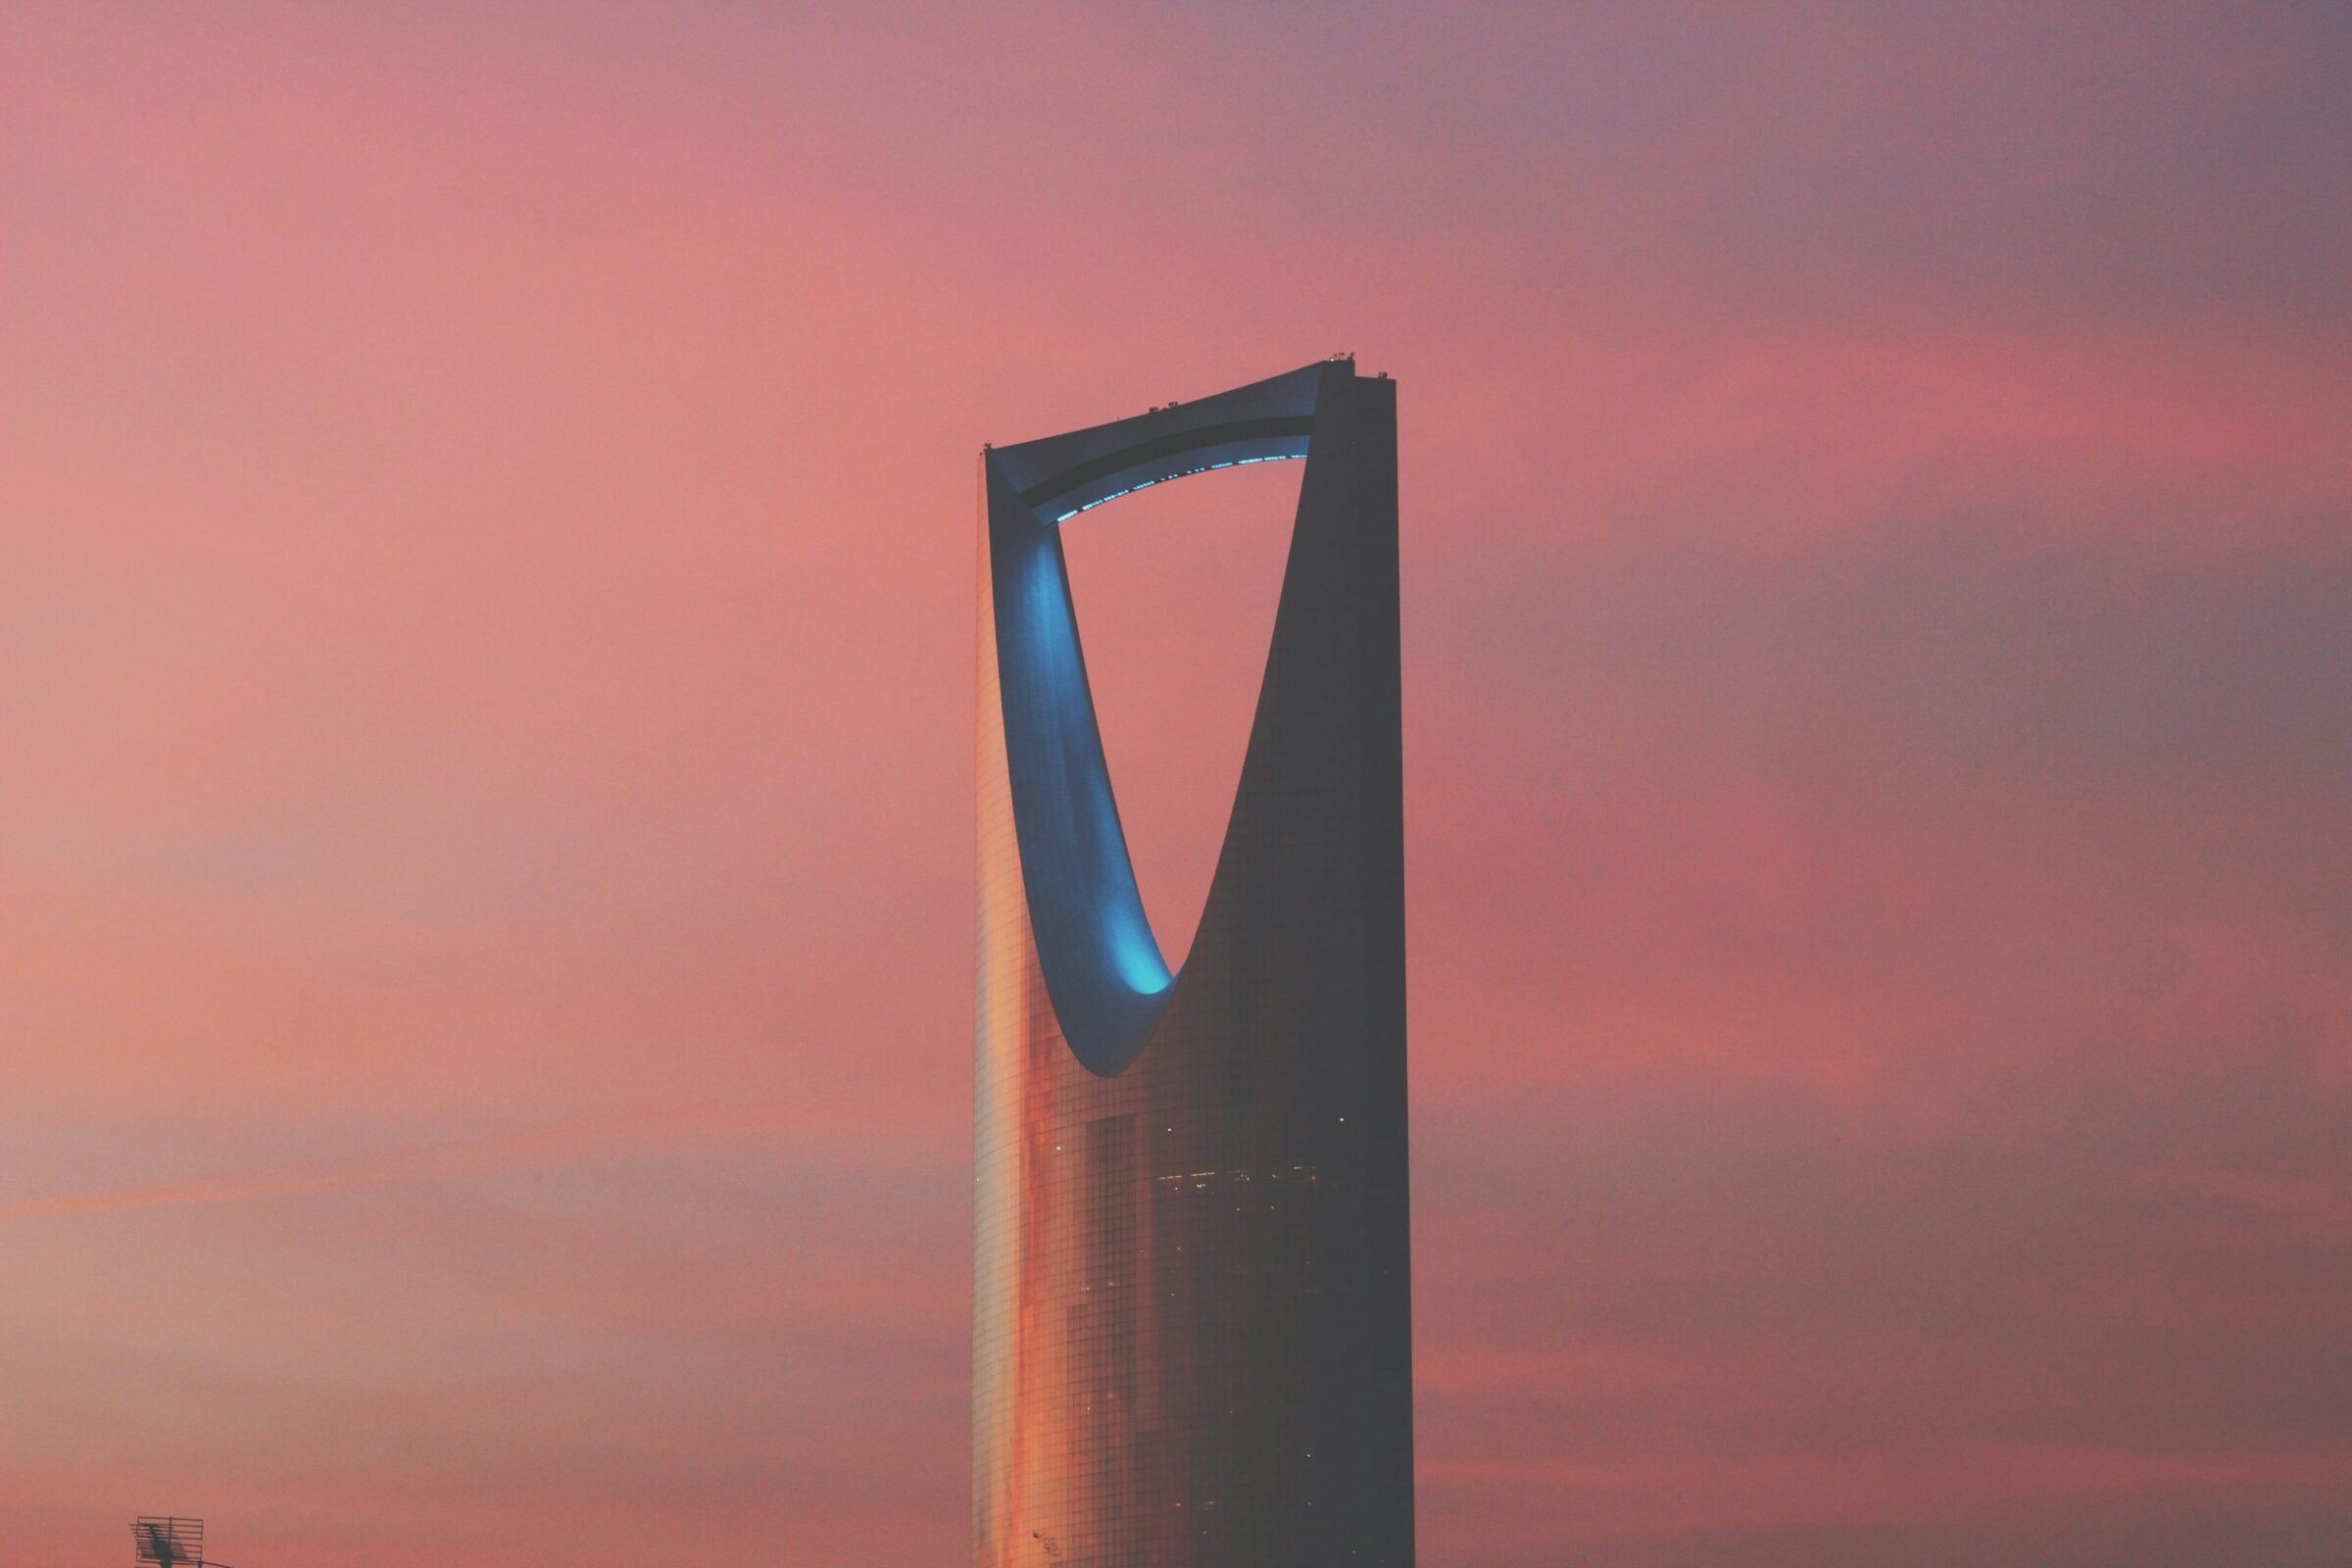 Applications of IoT in Saudi Arabia